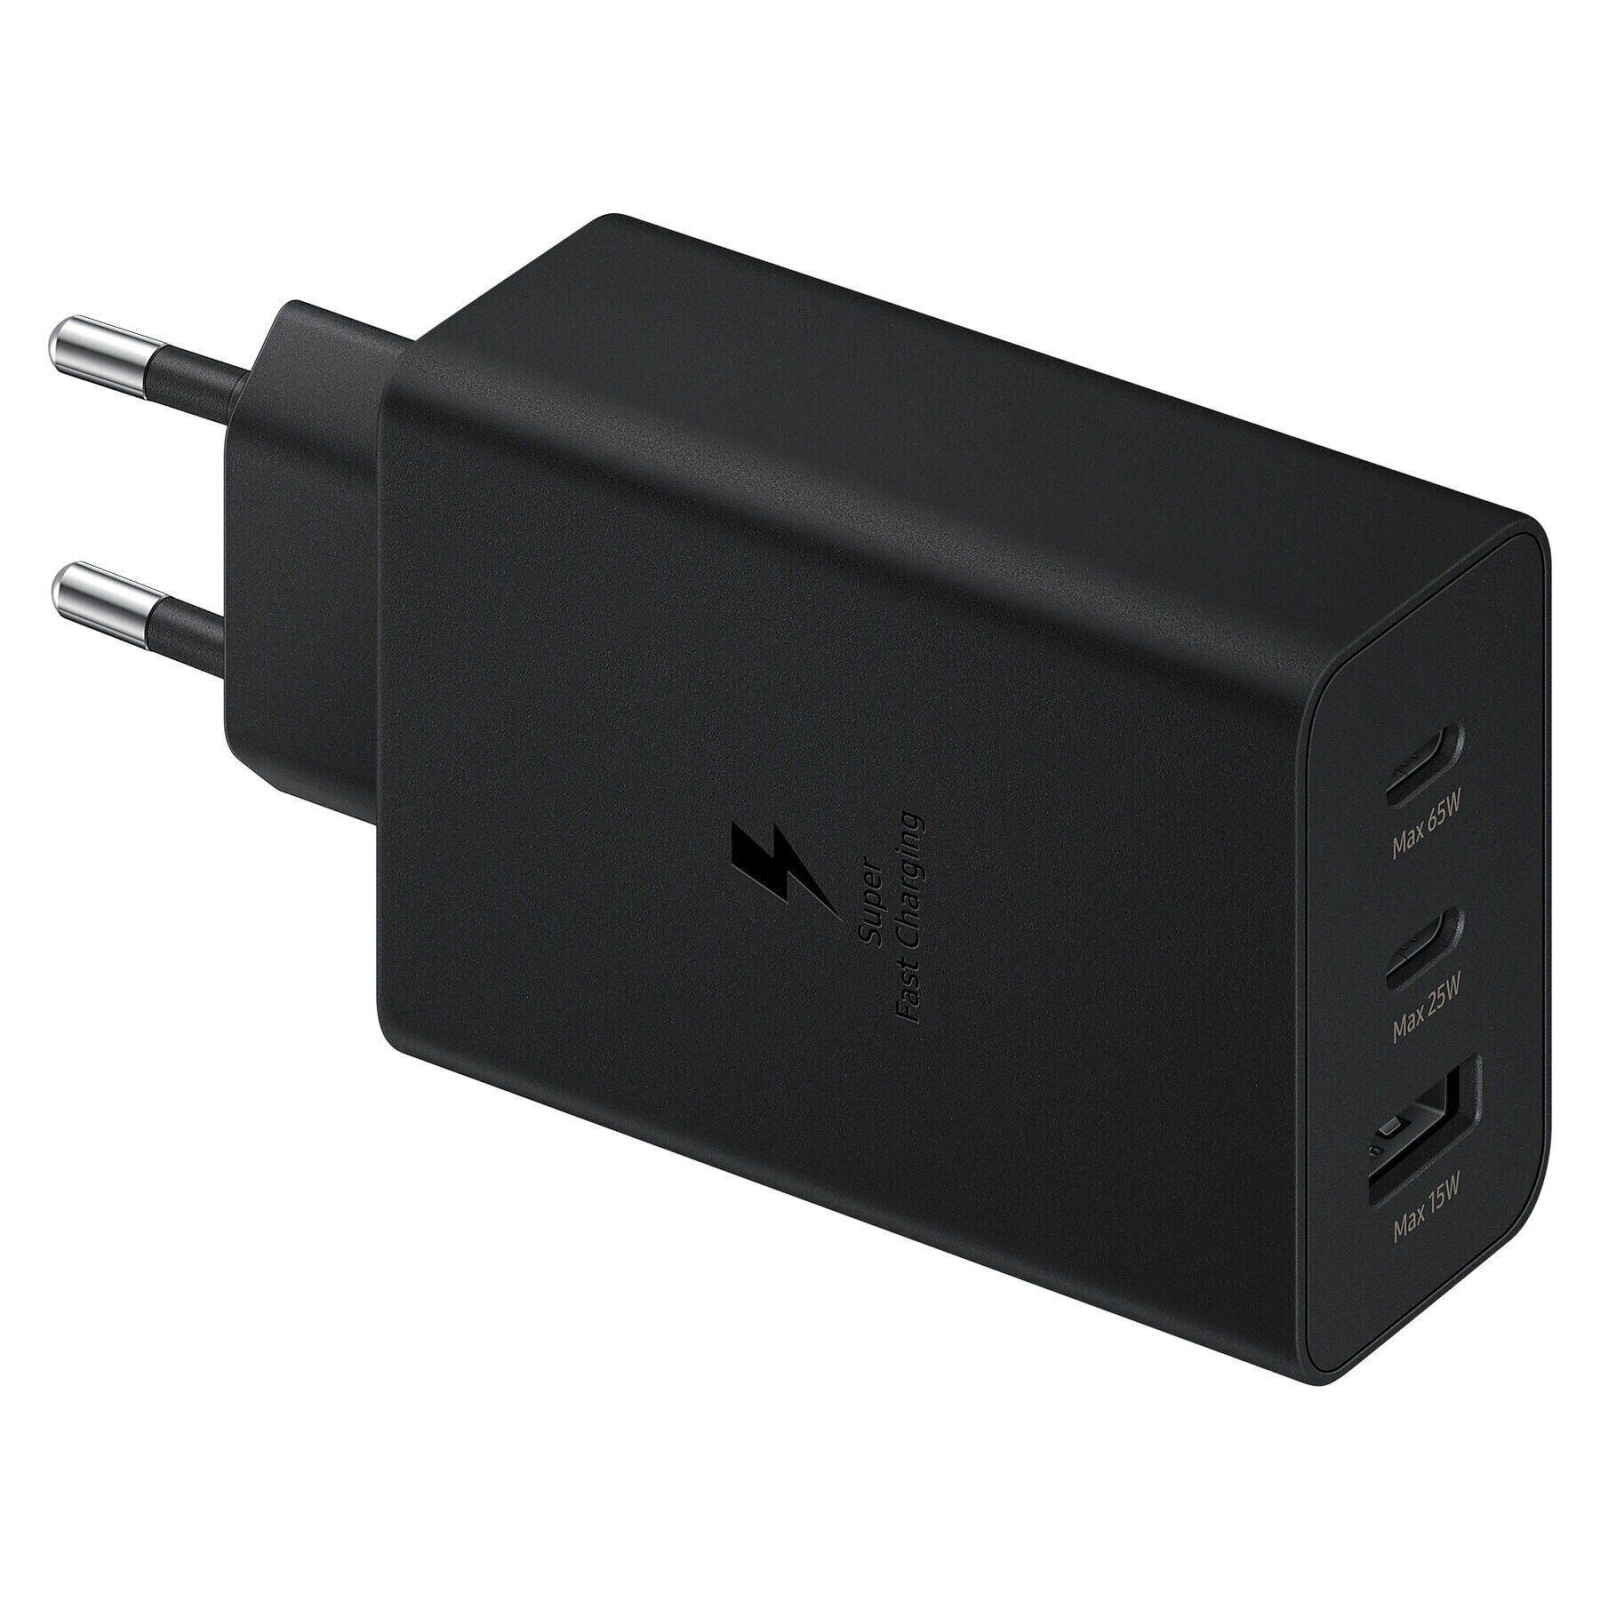 Зарядное устройство Samsung 65W Power Adapter Trio (w/o cable) Black (EP-T6530NBEGRU) изображение 3